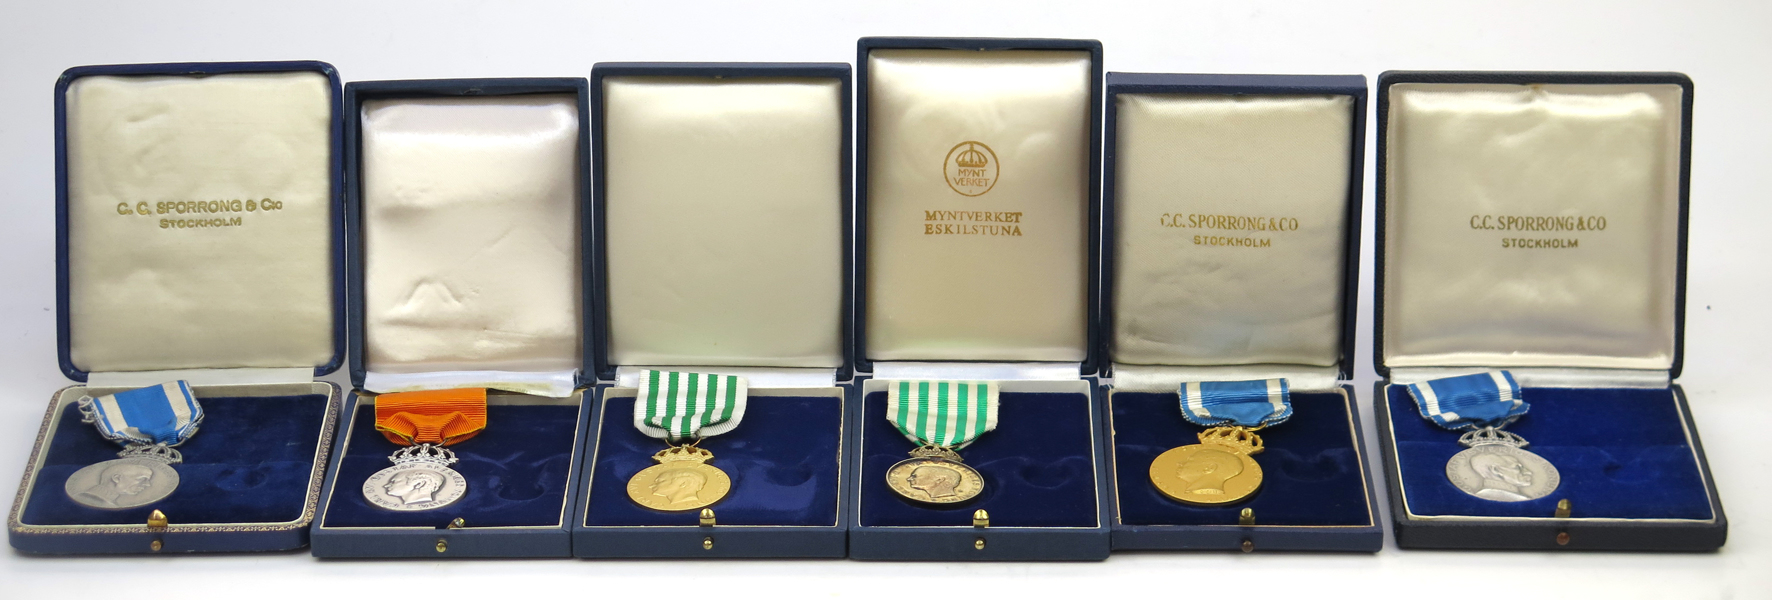 Kungliga medaljer, 6 st, silver, Gustav V - Carl XVI Gustaf, _18647a_8da23a83ff3f0c8_lg.jpeg